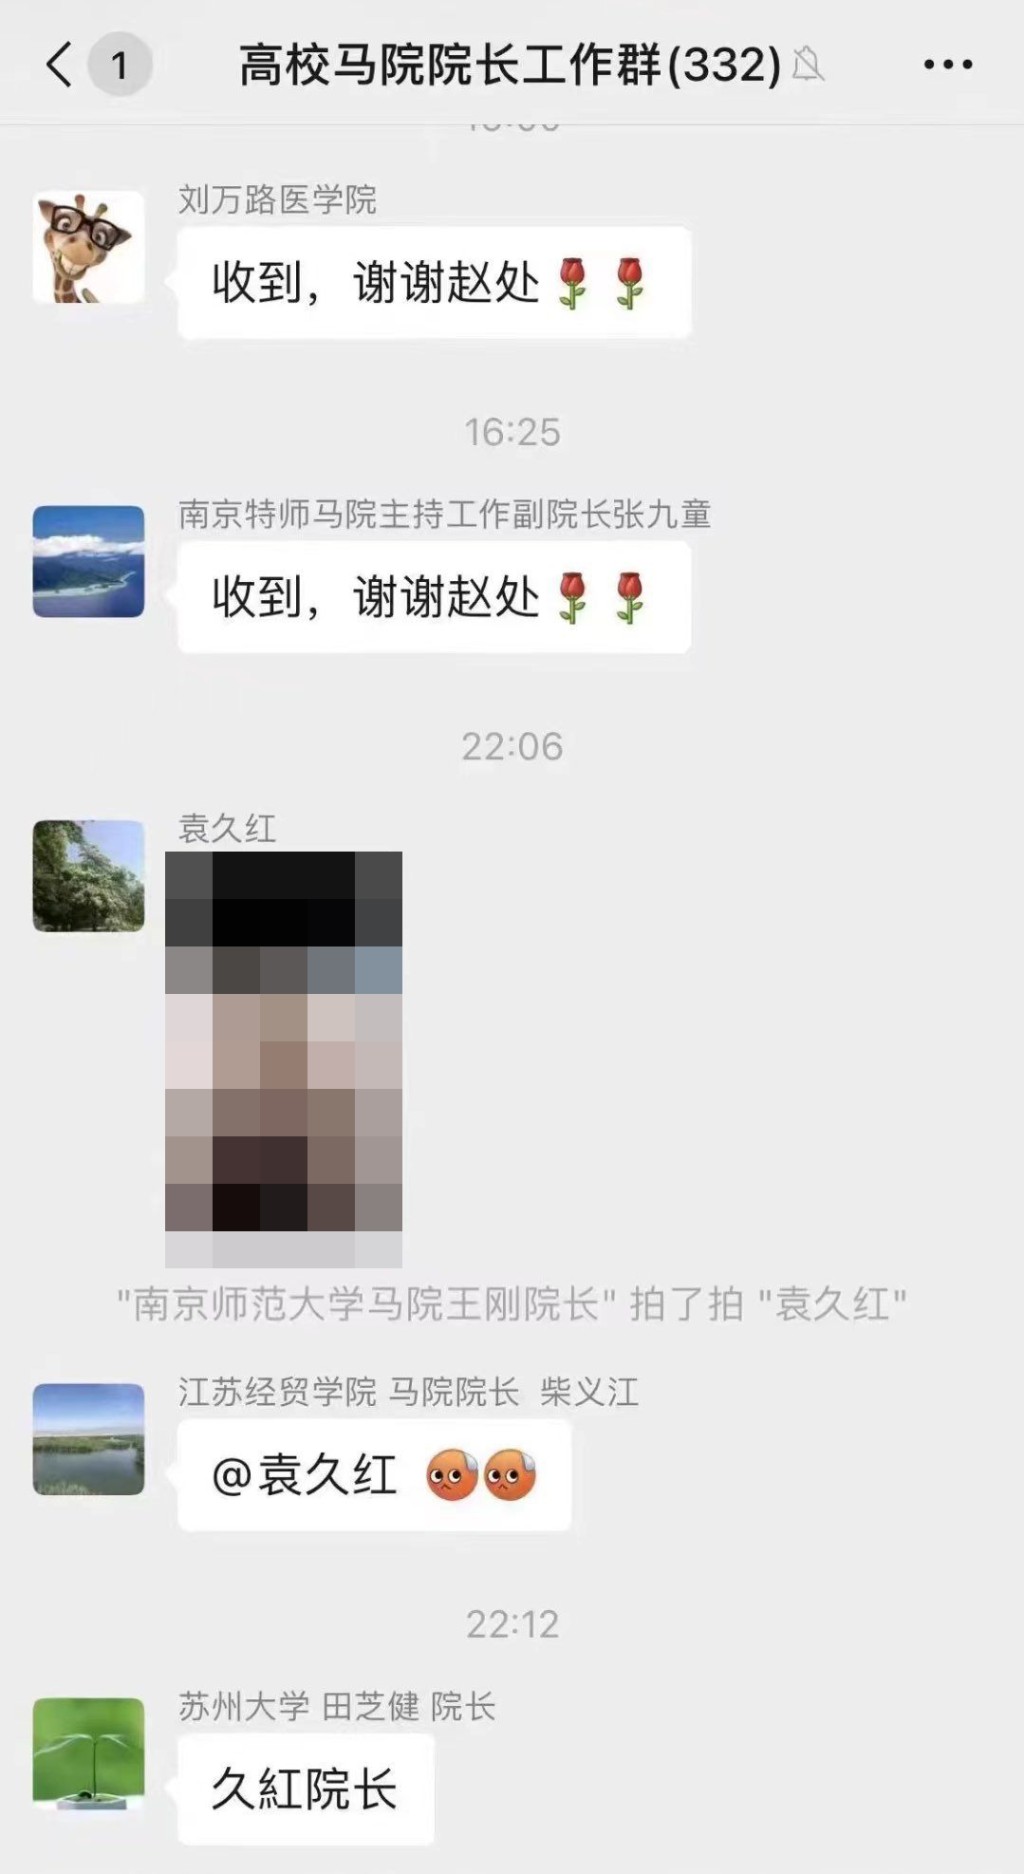 袁久红在微信群组误发一张色情照。(互联网)